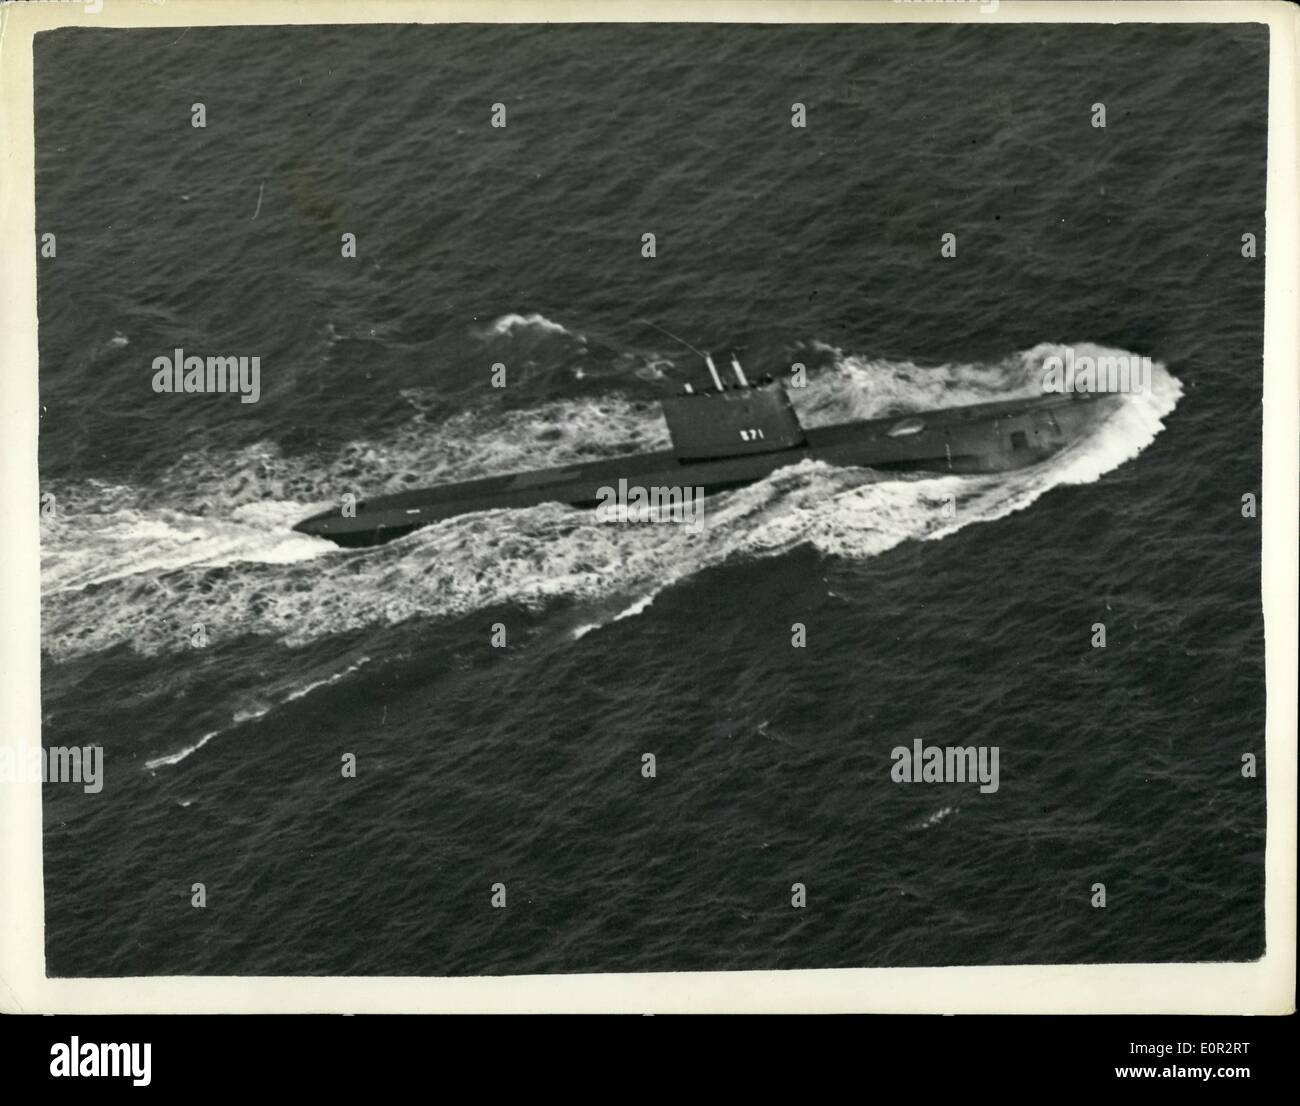 10. Oktober 1957 - The Atom-u Boot segelt in - nach 14 Tage unter dem Meer: ein Welten-Record u-Boot-Tauchgang von 14 Tagen 3-1/2 Stunden wurde geltend gemacht, für die United States Navy Atom u-Boot Nautilus durch ihr Kommandant, 36-jährige Commander William R. Anderson powered, als er das u-Boot in Portland, Dorset gestern brachte. Es war die Nautilus Antrittsbesuch in einem ausländischen Hafen. Während ihrer langen Zauber unter Wasser. Nautilus reiste 5.000 Meilen bei mehr als 15 Knoten ohne einmal auftauchen oder '' Schnorcheln ''. Foto zeigt den USA Stockfoto